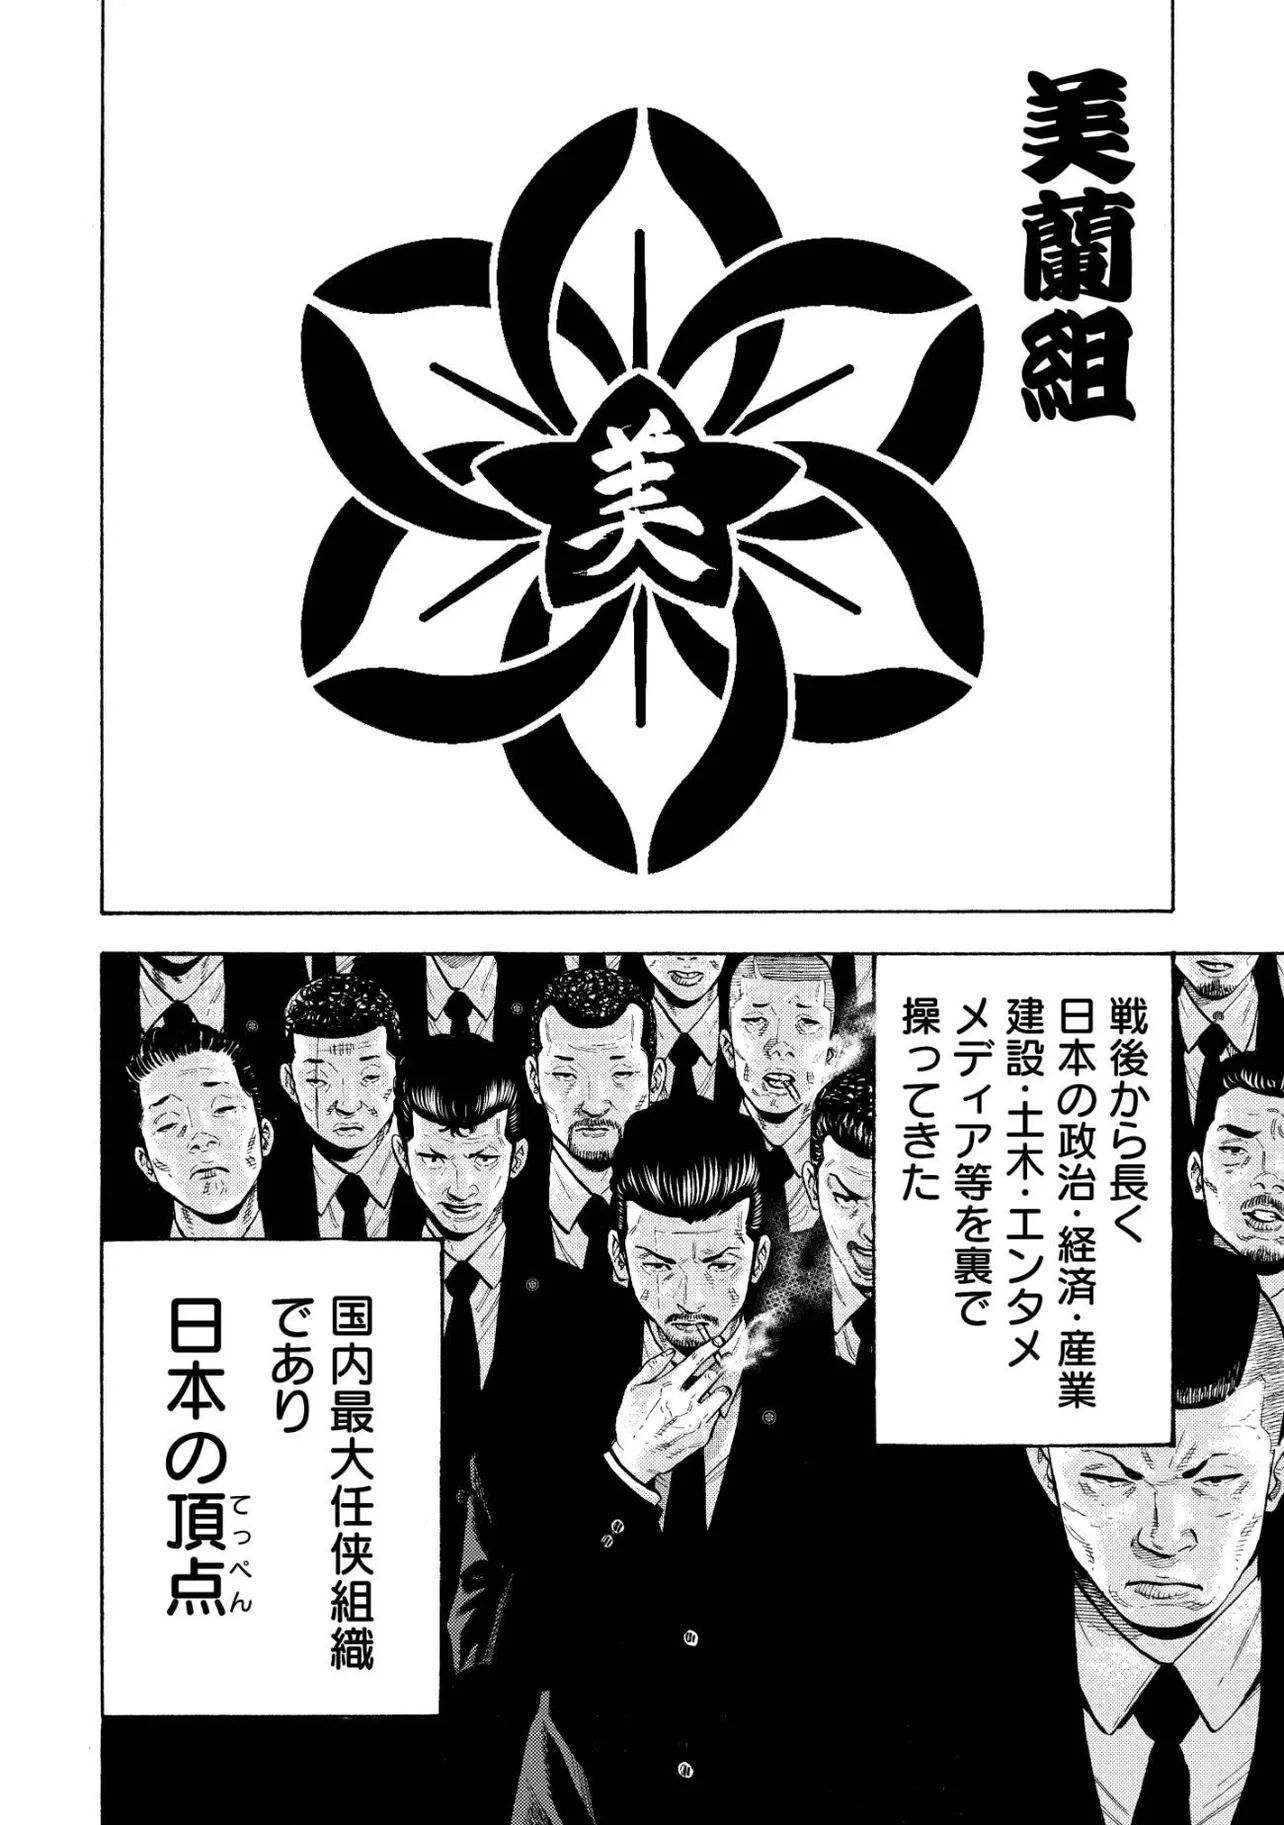 『総理大臣の息子が日本一の極道になる話』(4／45)